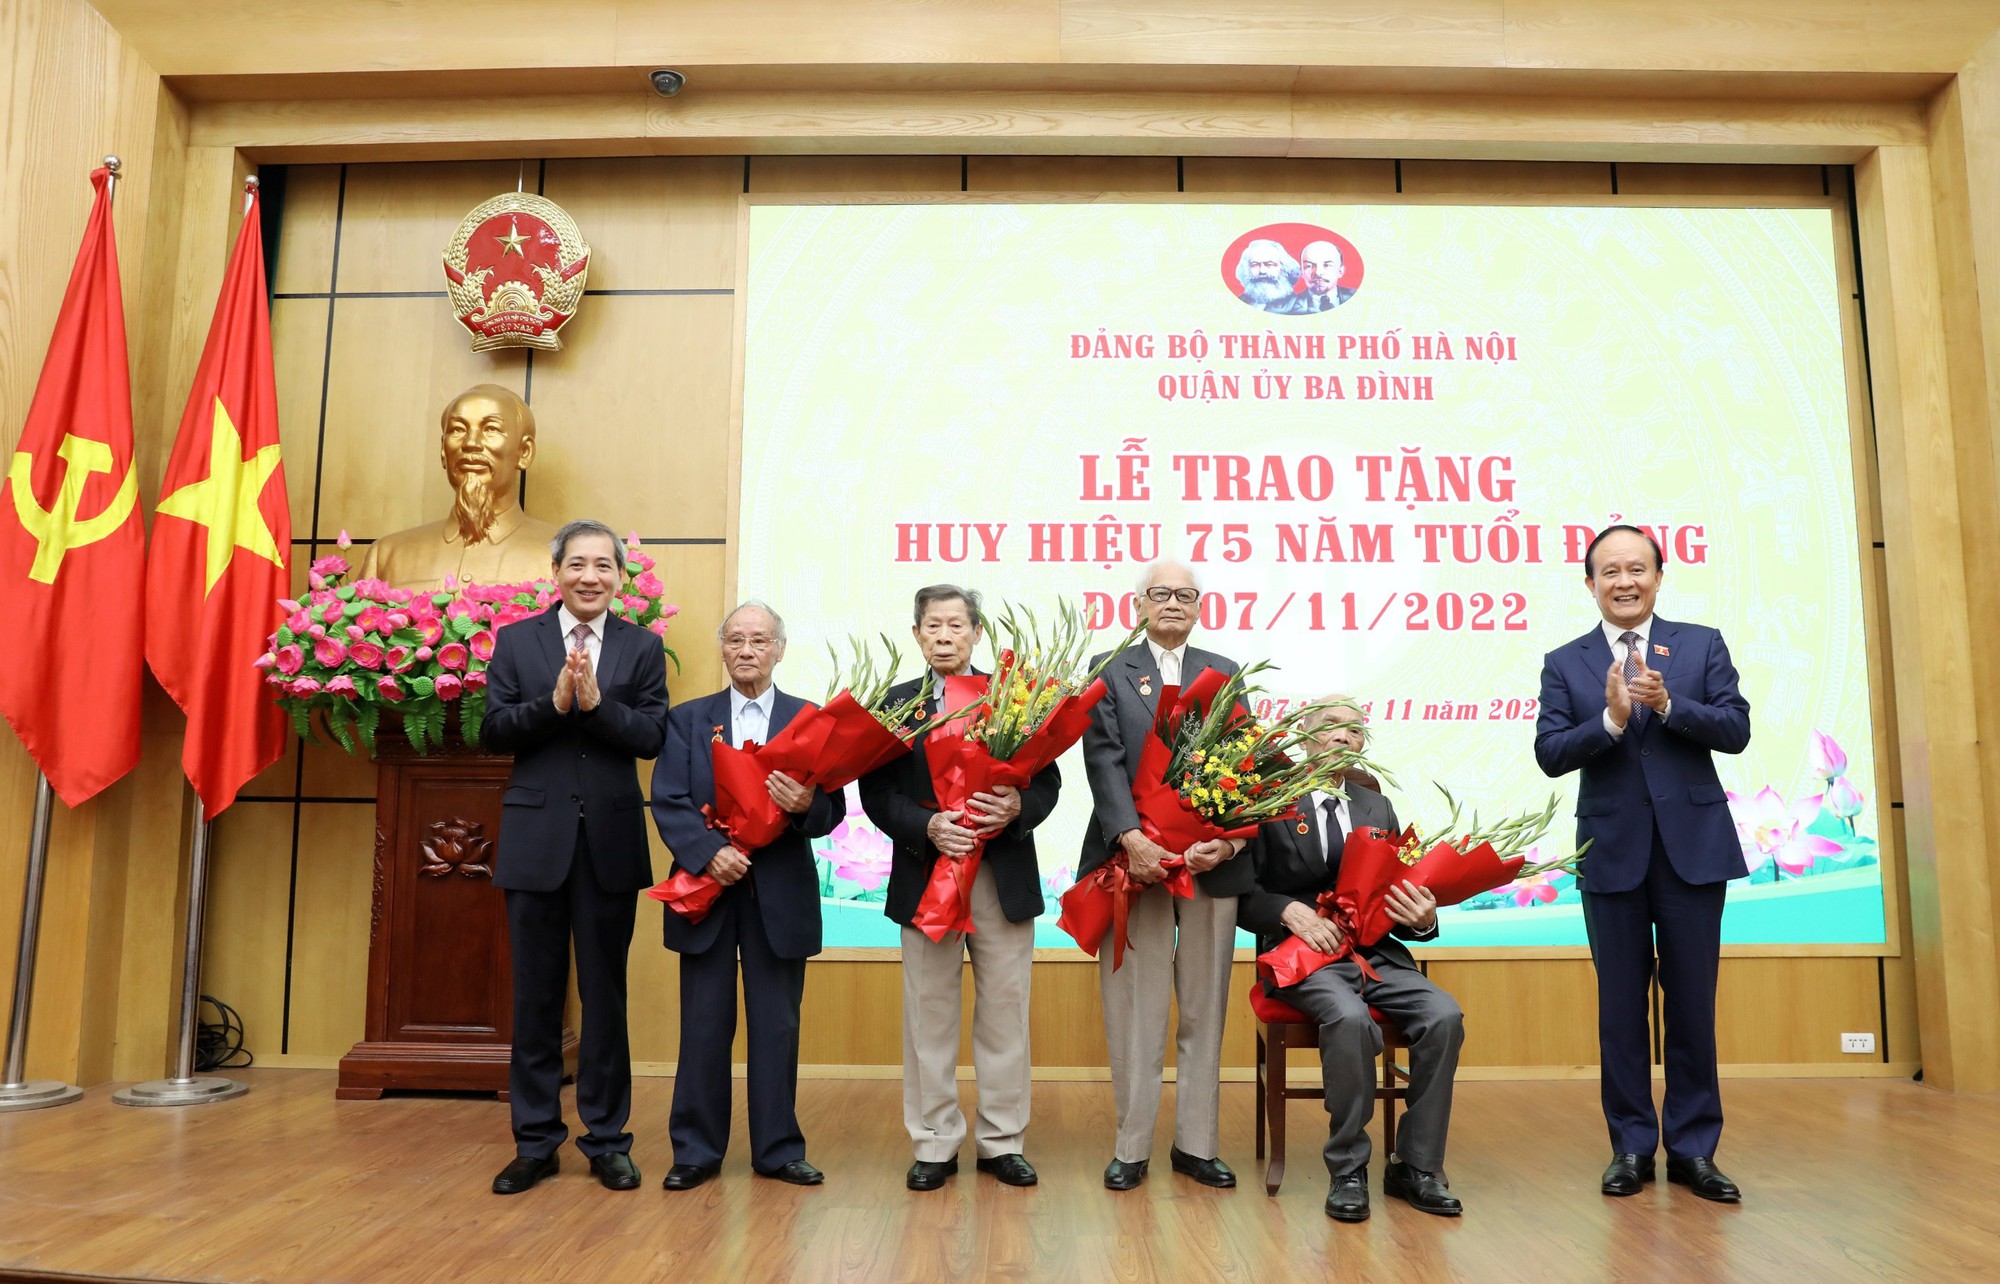 Huy hiệu Đảng là biểu tượng truyền thống của Đảng Cộng sản Việt Nam và được trao cho các cán bộ cách mạng. Hãy cùng xem các hình ảnh về huy hiệu Đảng và các cán bộ cách mạng mang đầu số 07 để cảm nhận sự kiêu hãnh và tinh thần yêu nước của họ.